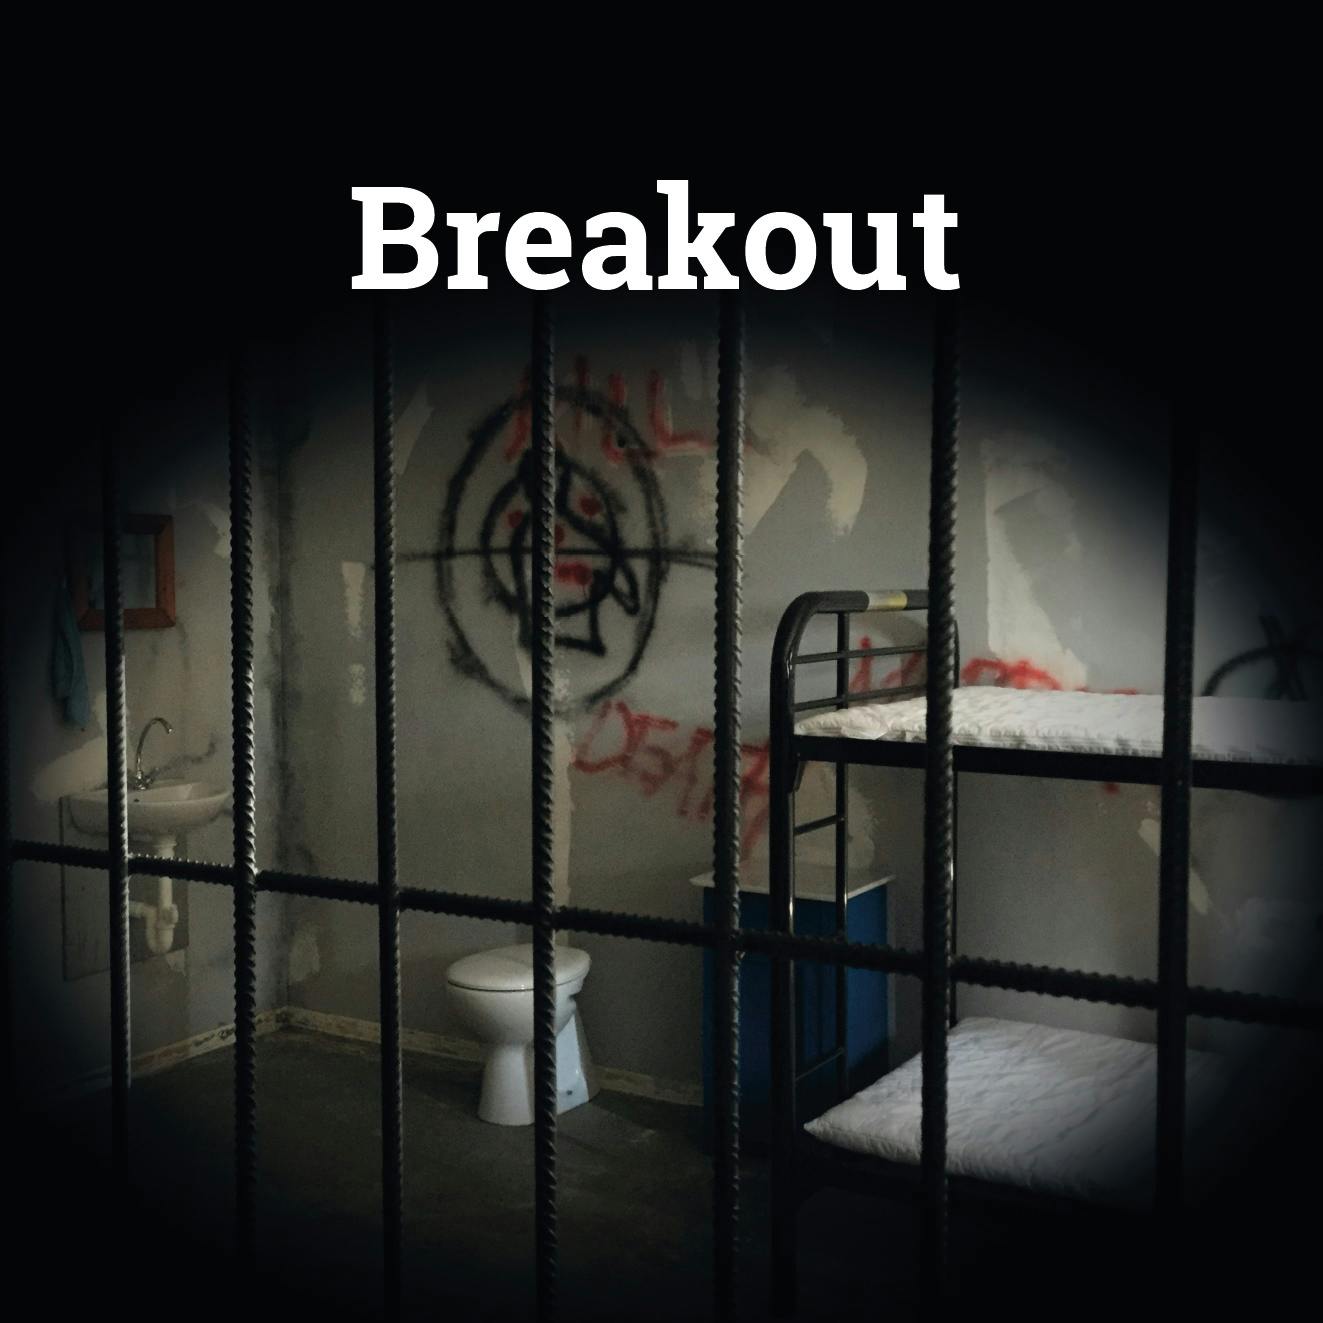 Jogo Escape Room "Breakout" em Saarbrücken